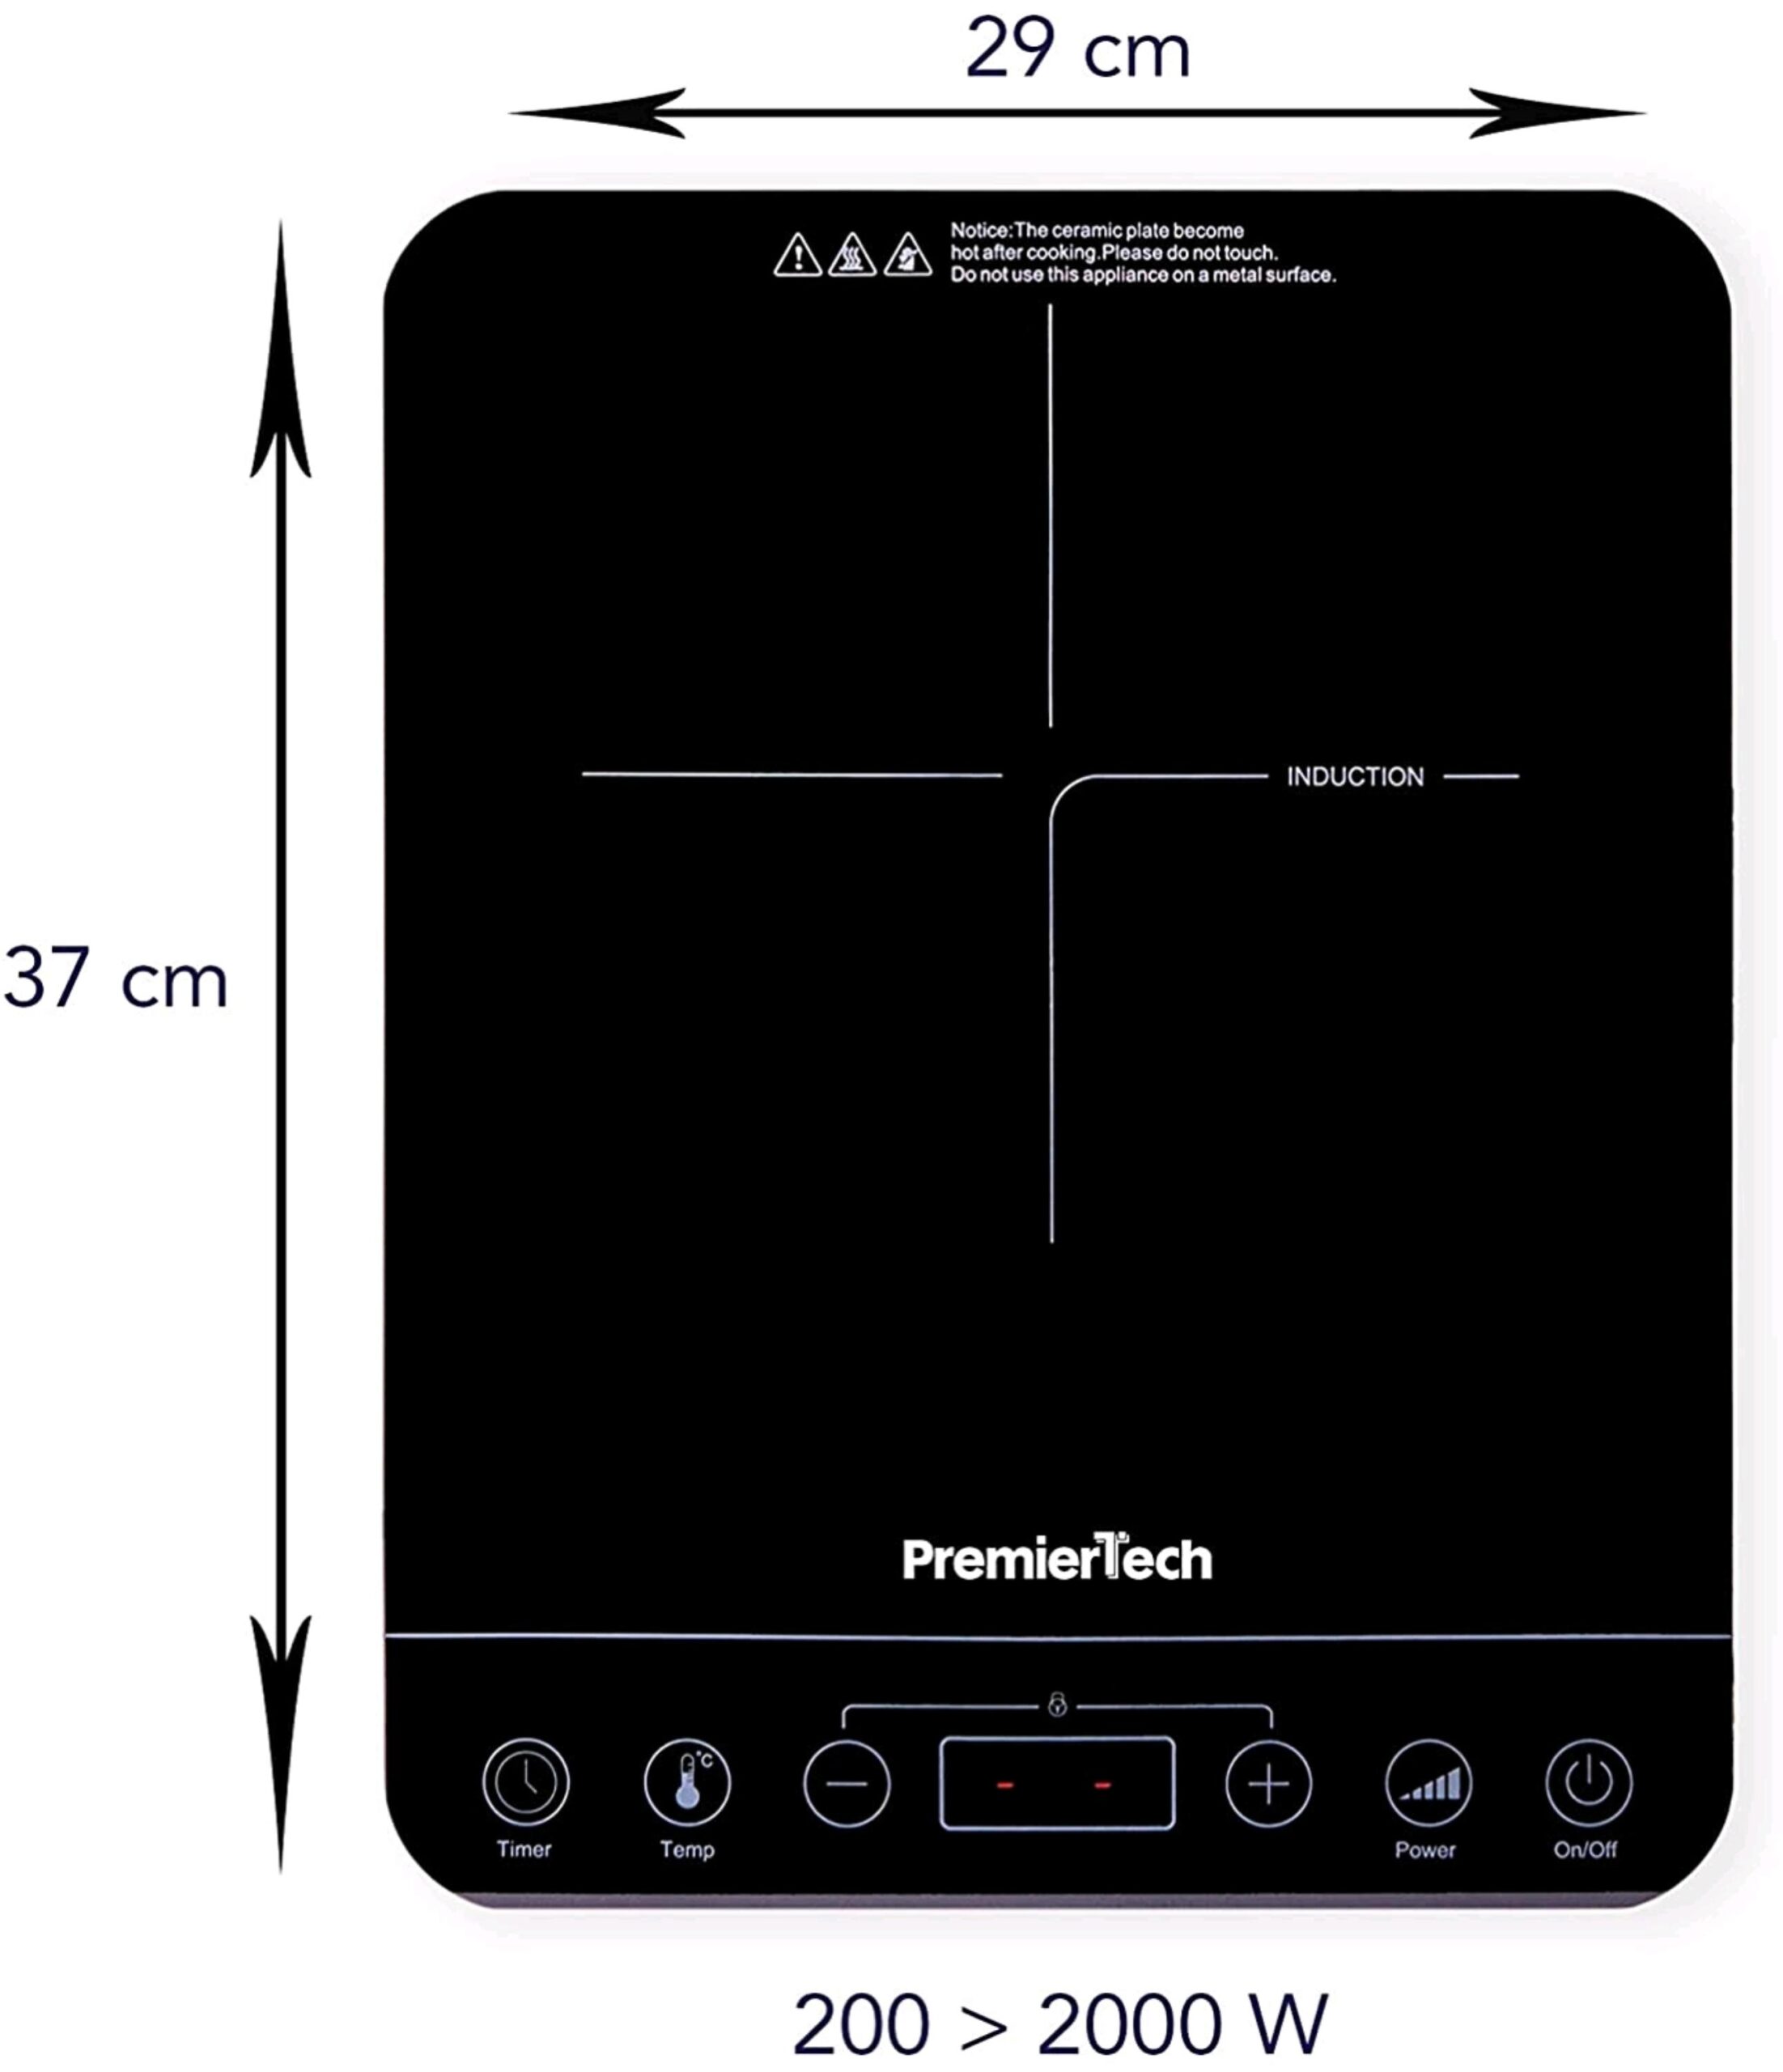 PT-PI1 Piastra a Induzione portatile Fornello Controlli Touch Display led 10 livelli di potenza 200>2000watt Timer 180min 4cm spessore PremierTech